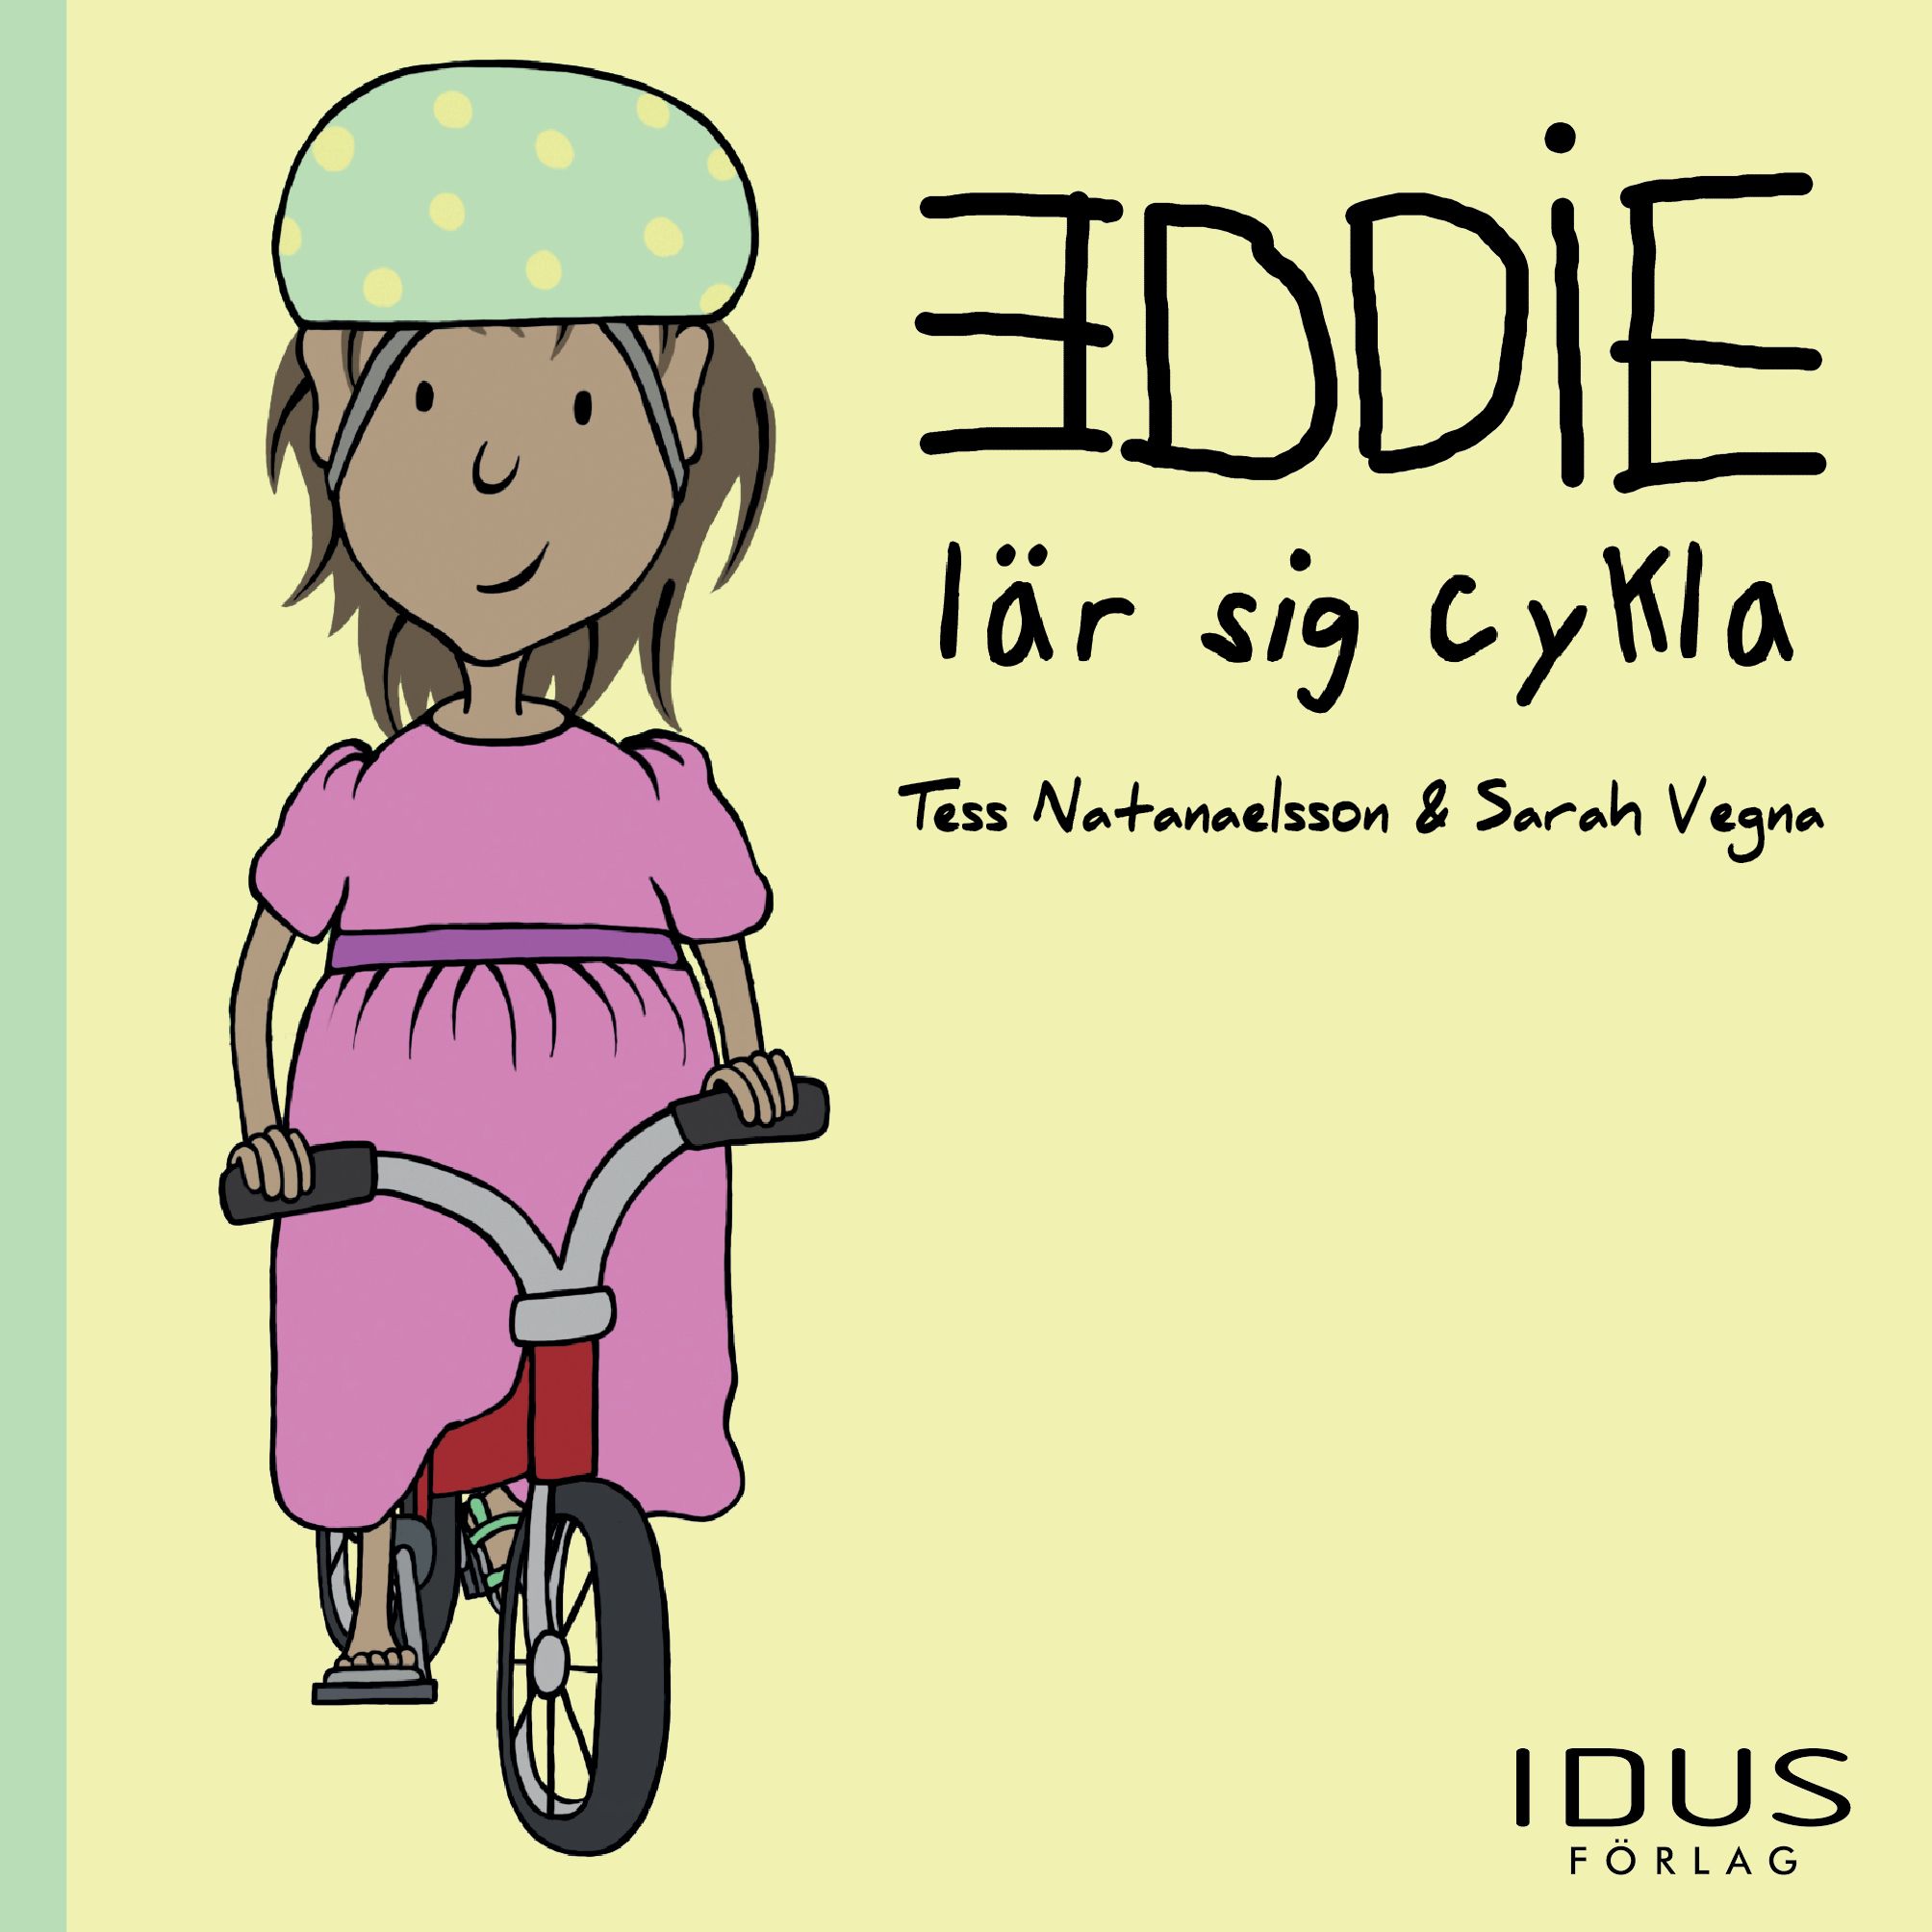 Eddie lär sig cykla, e-bog af Tess Natanaelsson, Sarah Vegna